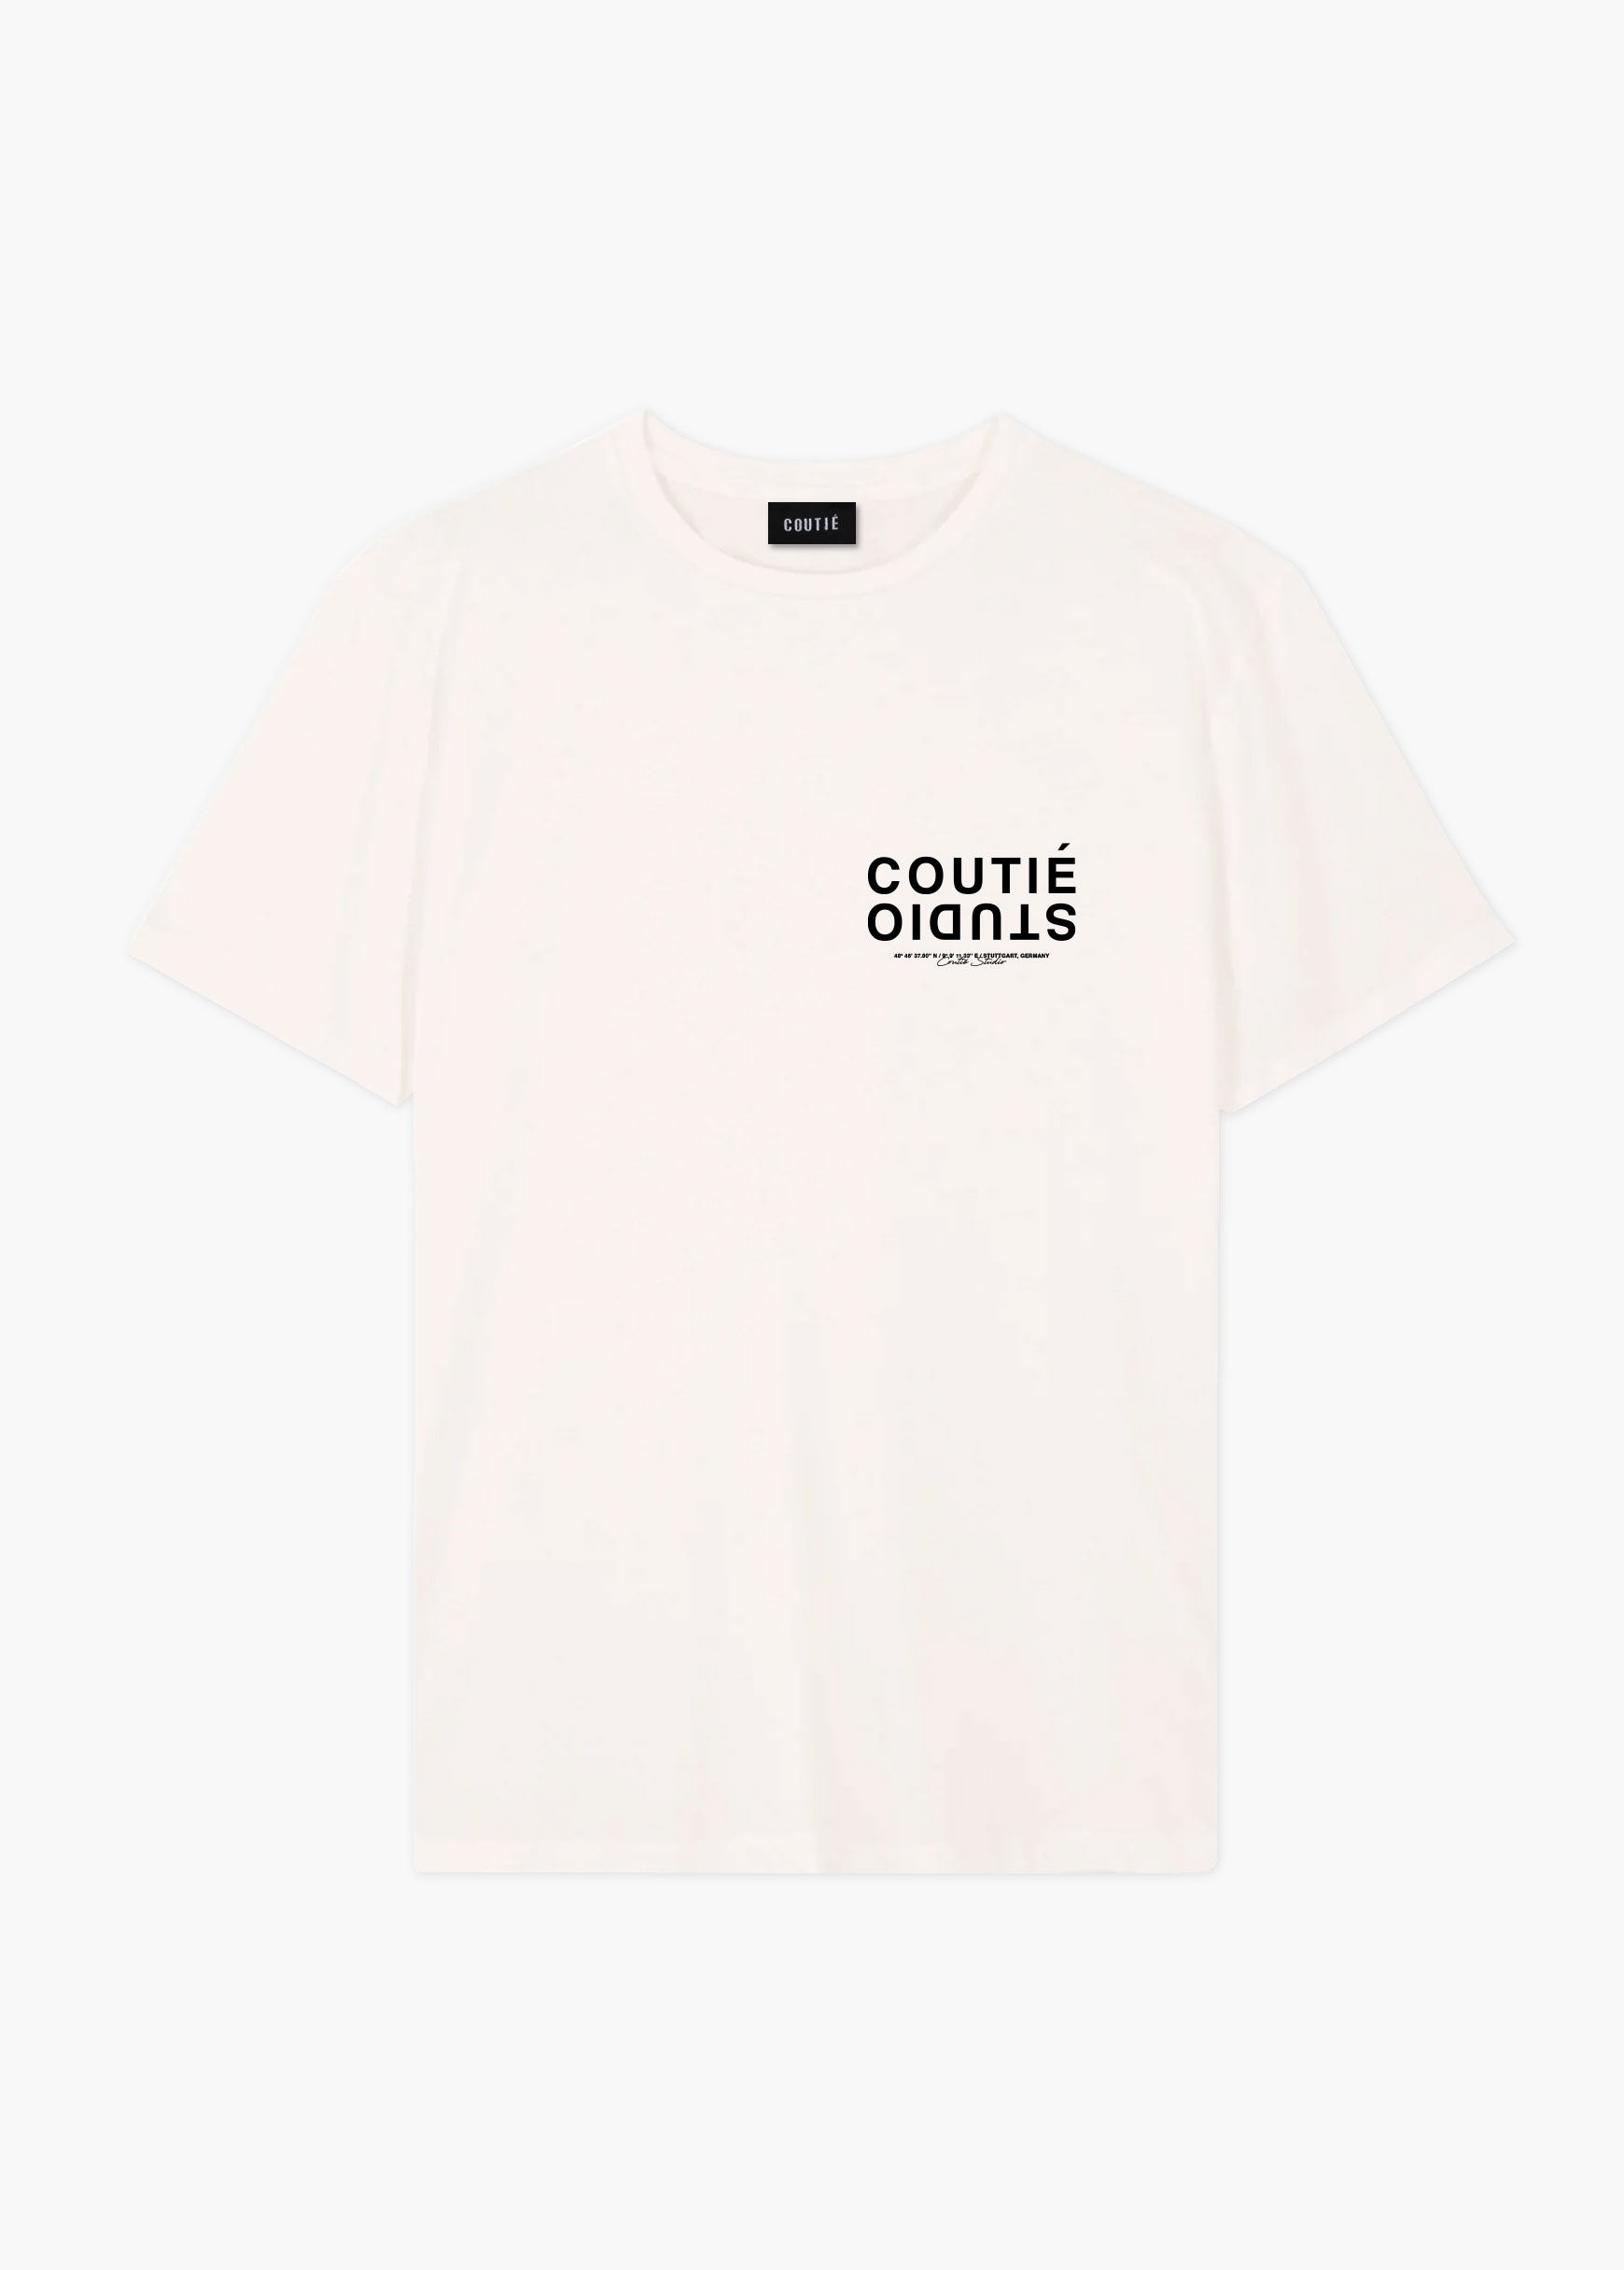 Coutié Vans Old Skool Ideas That Connect Custom